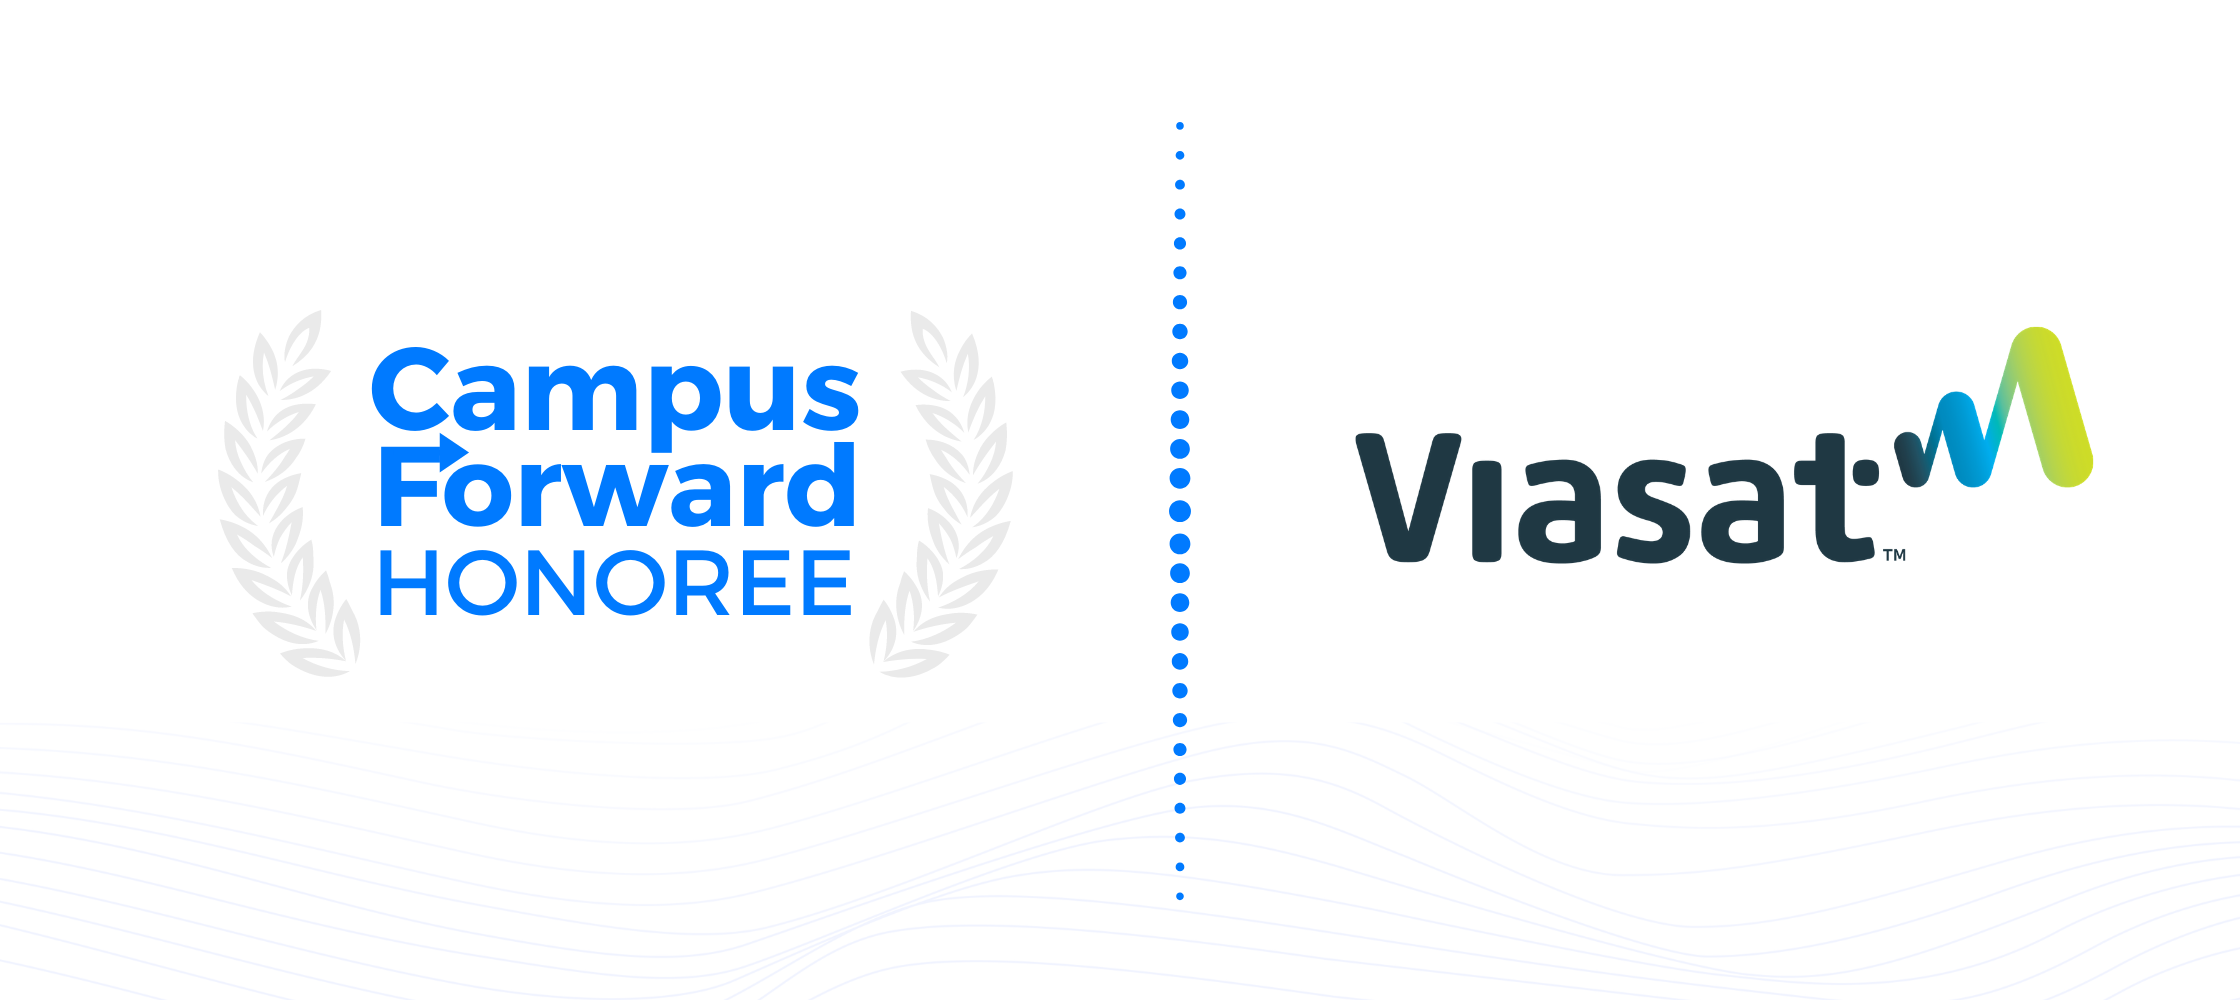 Campus Forward Honoree - Viasat